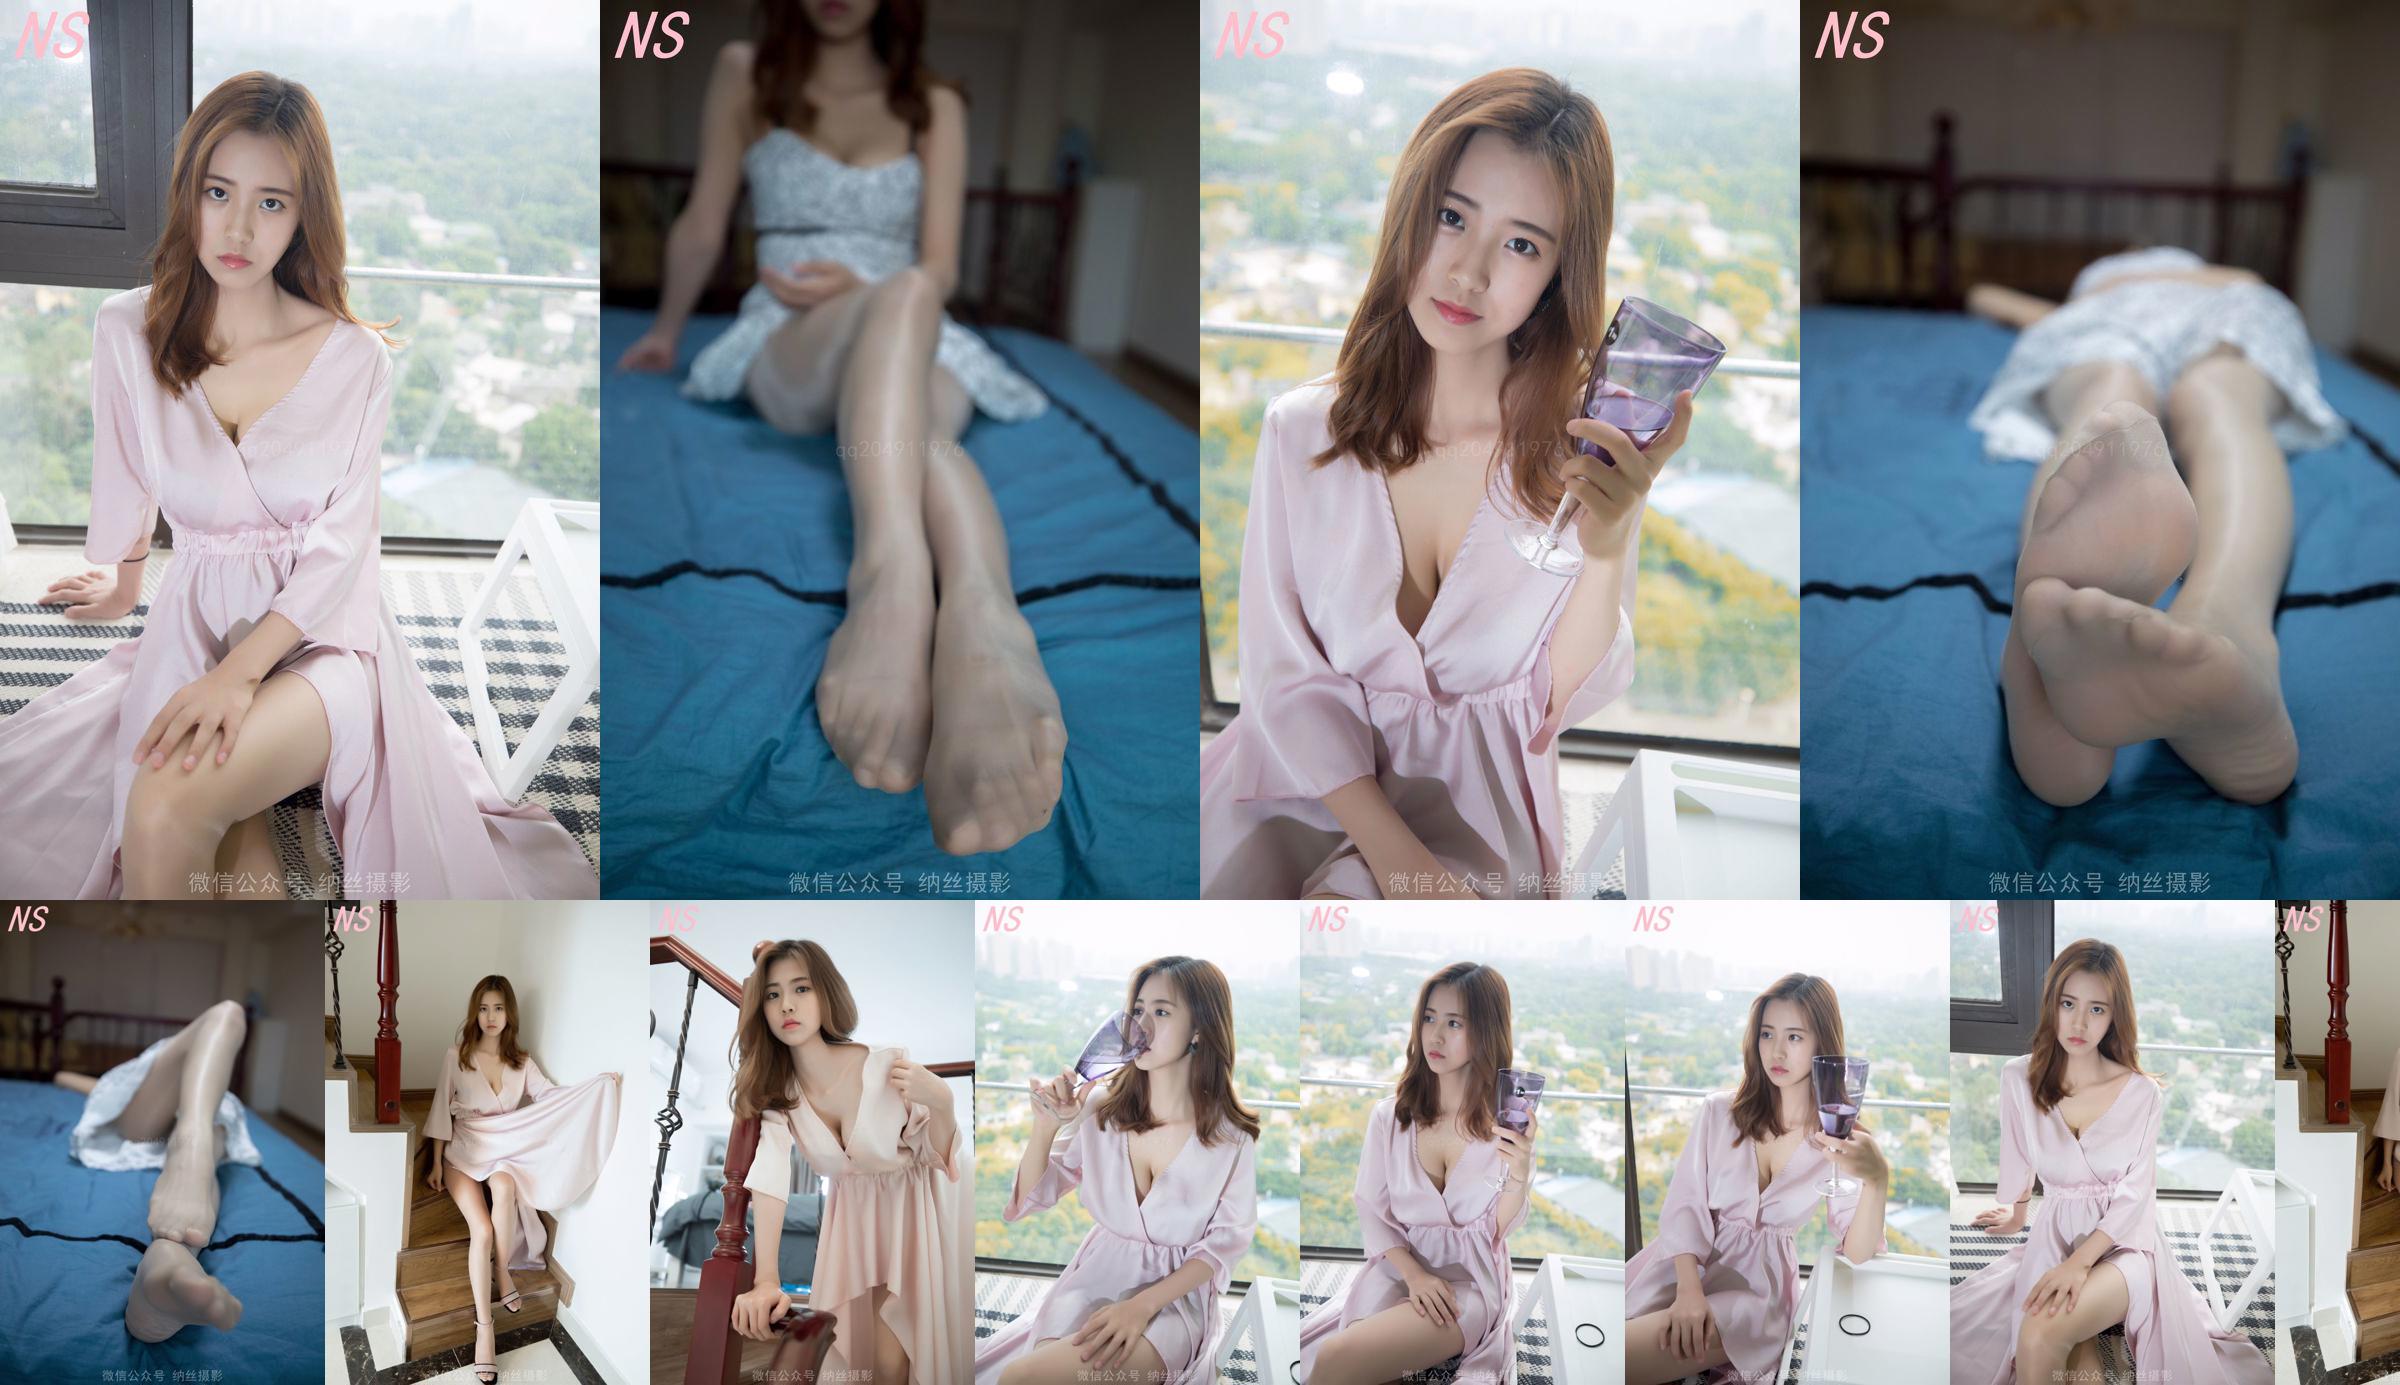 Beauty anchor Hanshuang "The Temptation of Pajamas" [Nasi Photography] No.1d64d0 Page 2